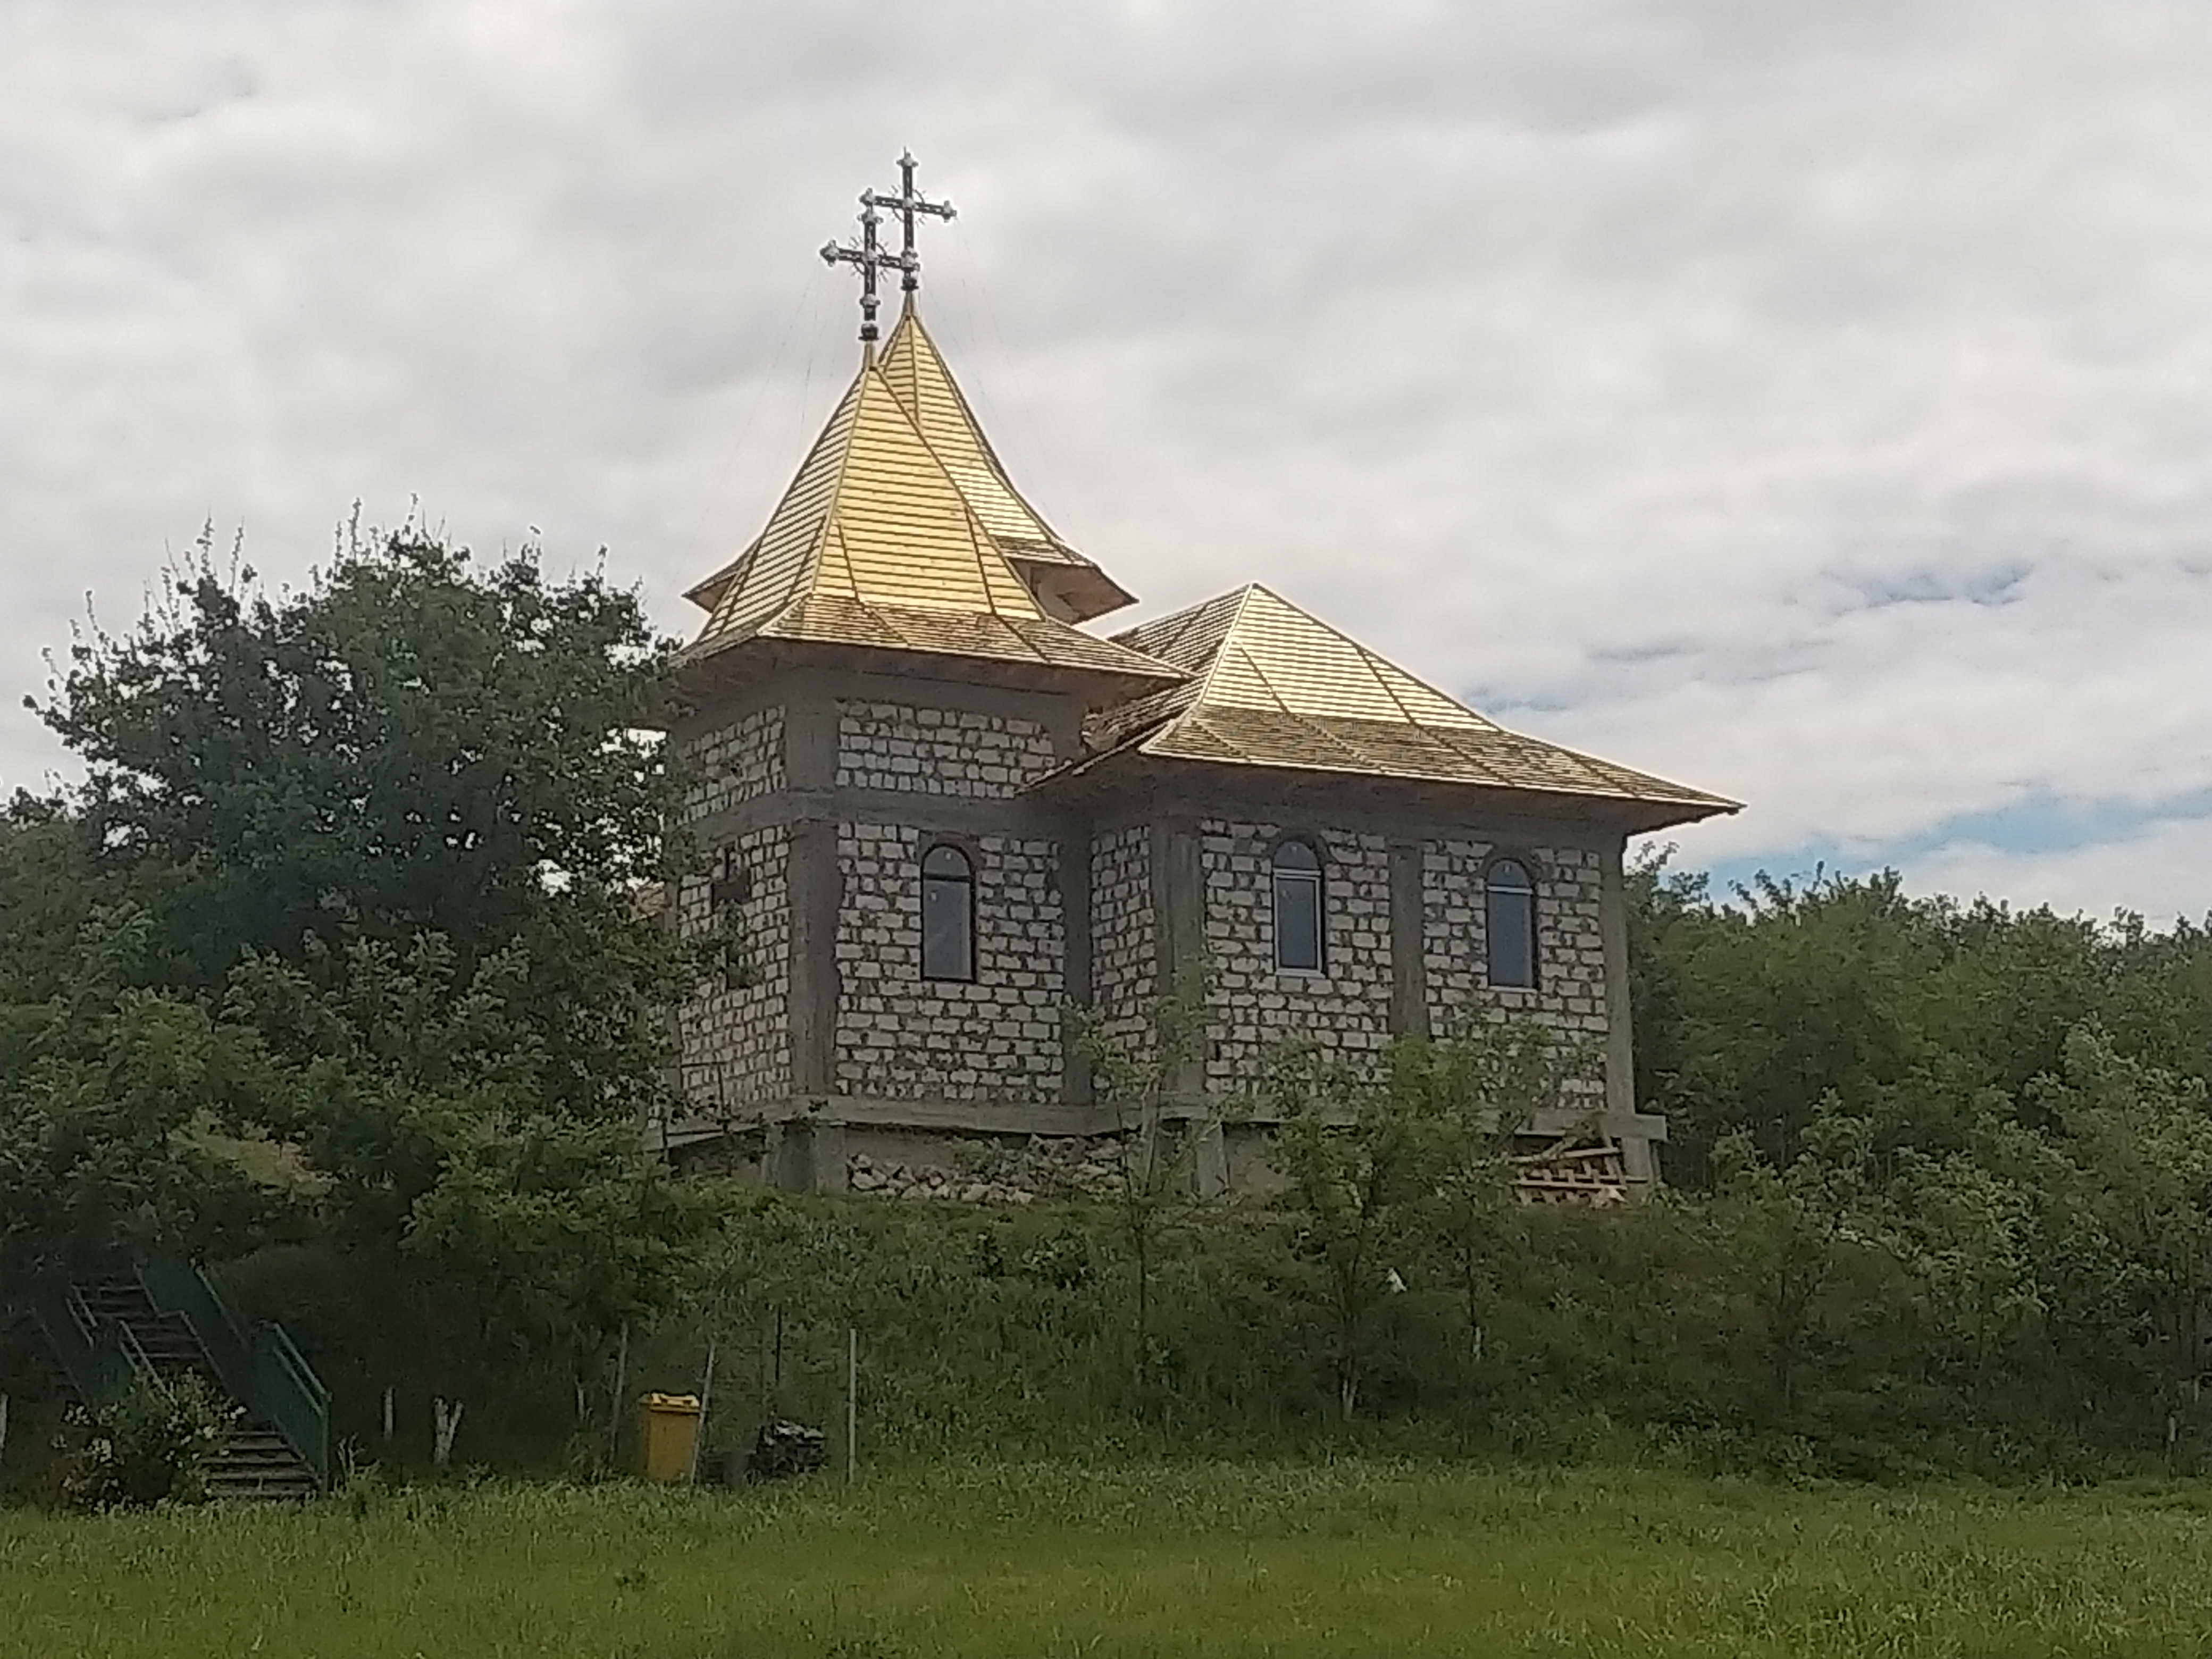 MD, Район Cantemir, Satul Stoianovca, Manastirea Eroilor in constructie